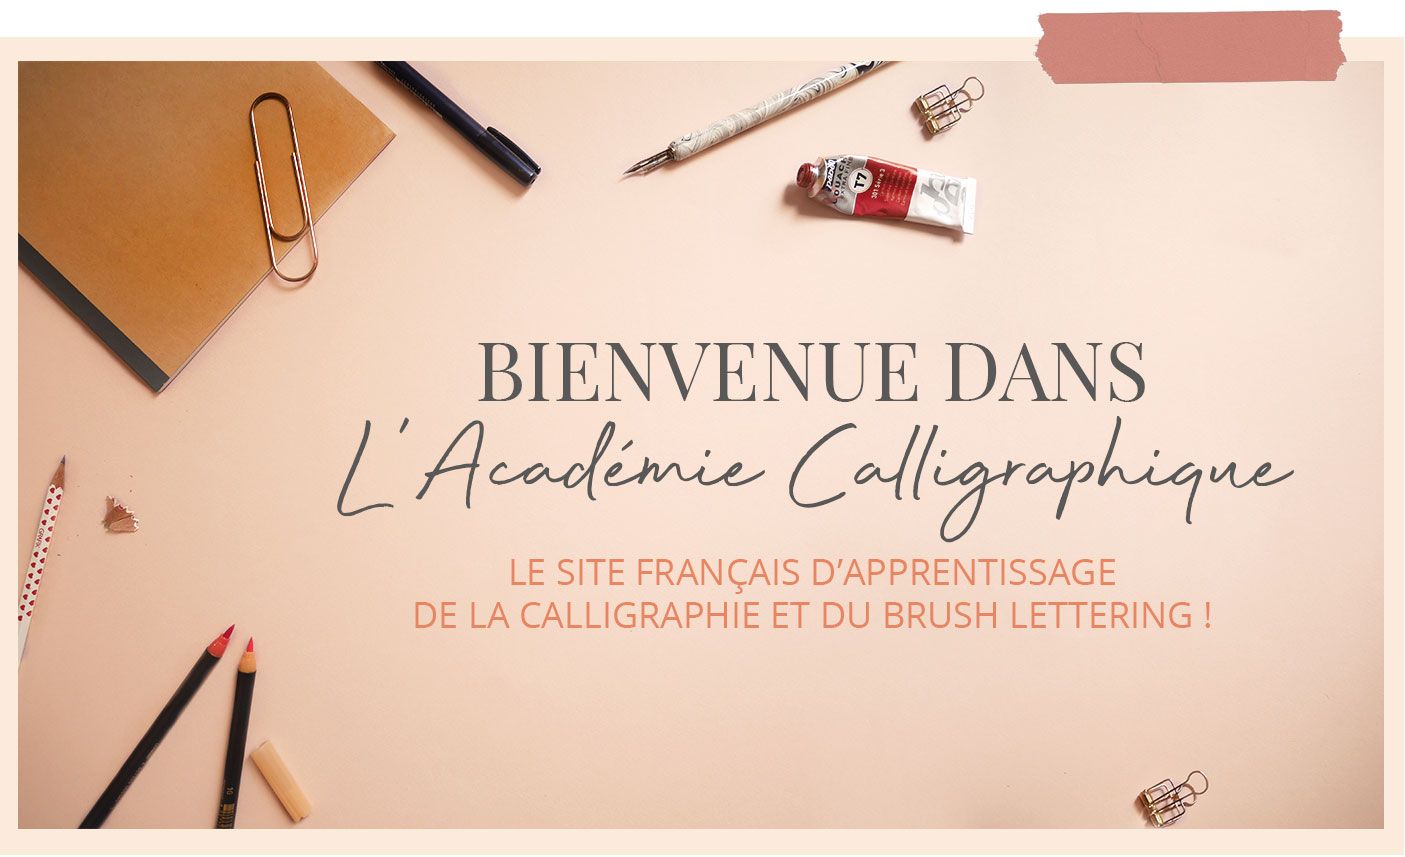 Apprendre la calligraphie et le lettering - Calligraphique